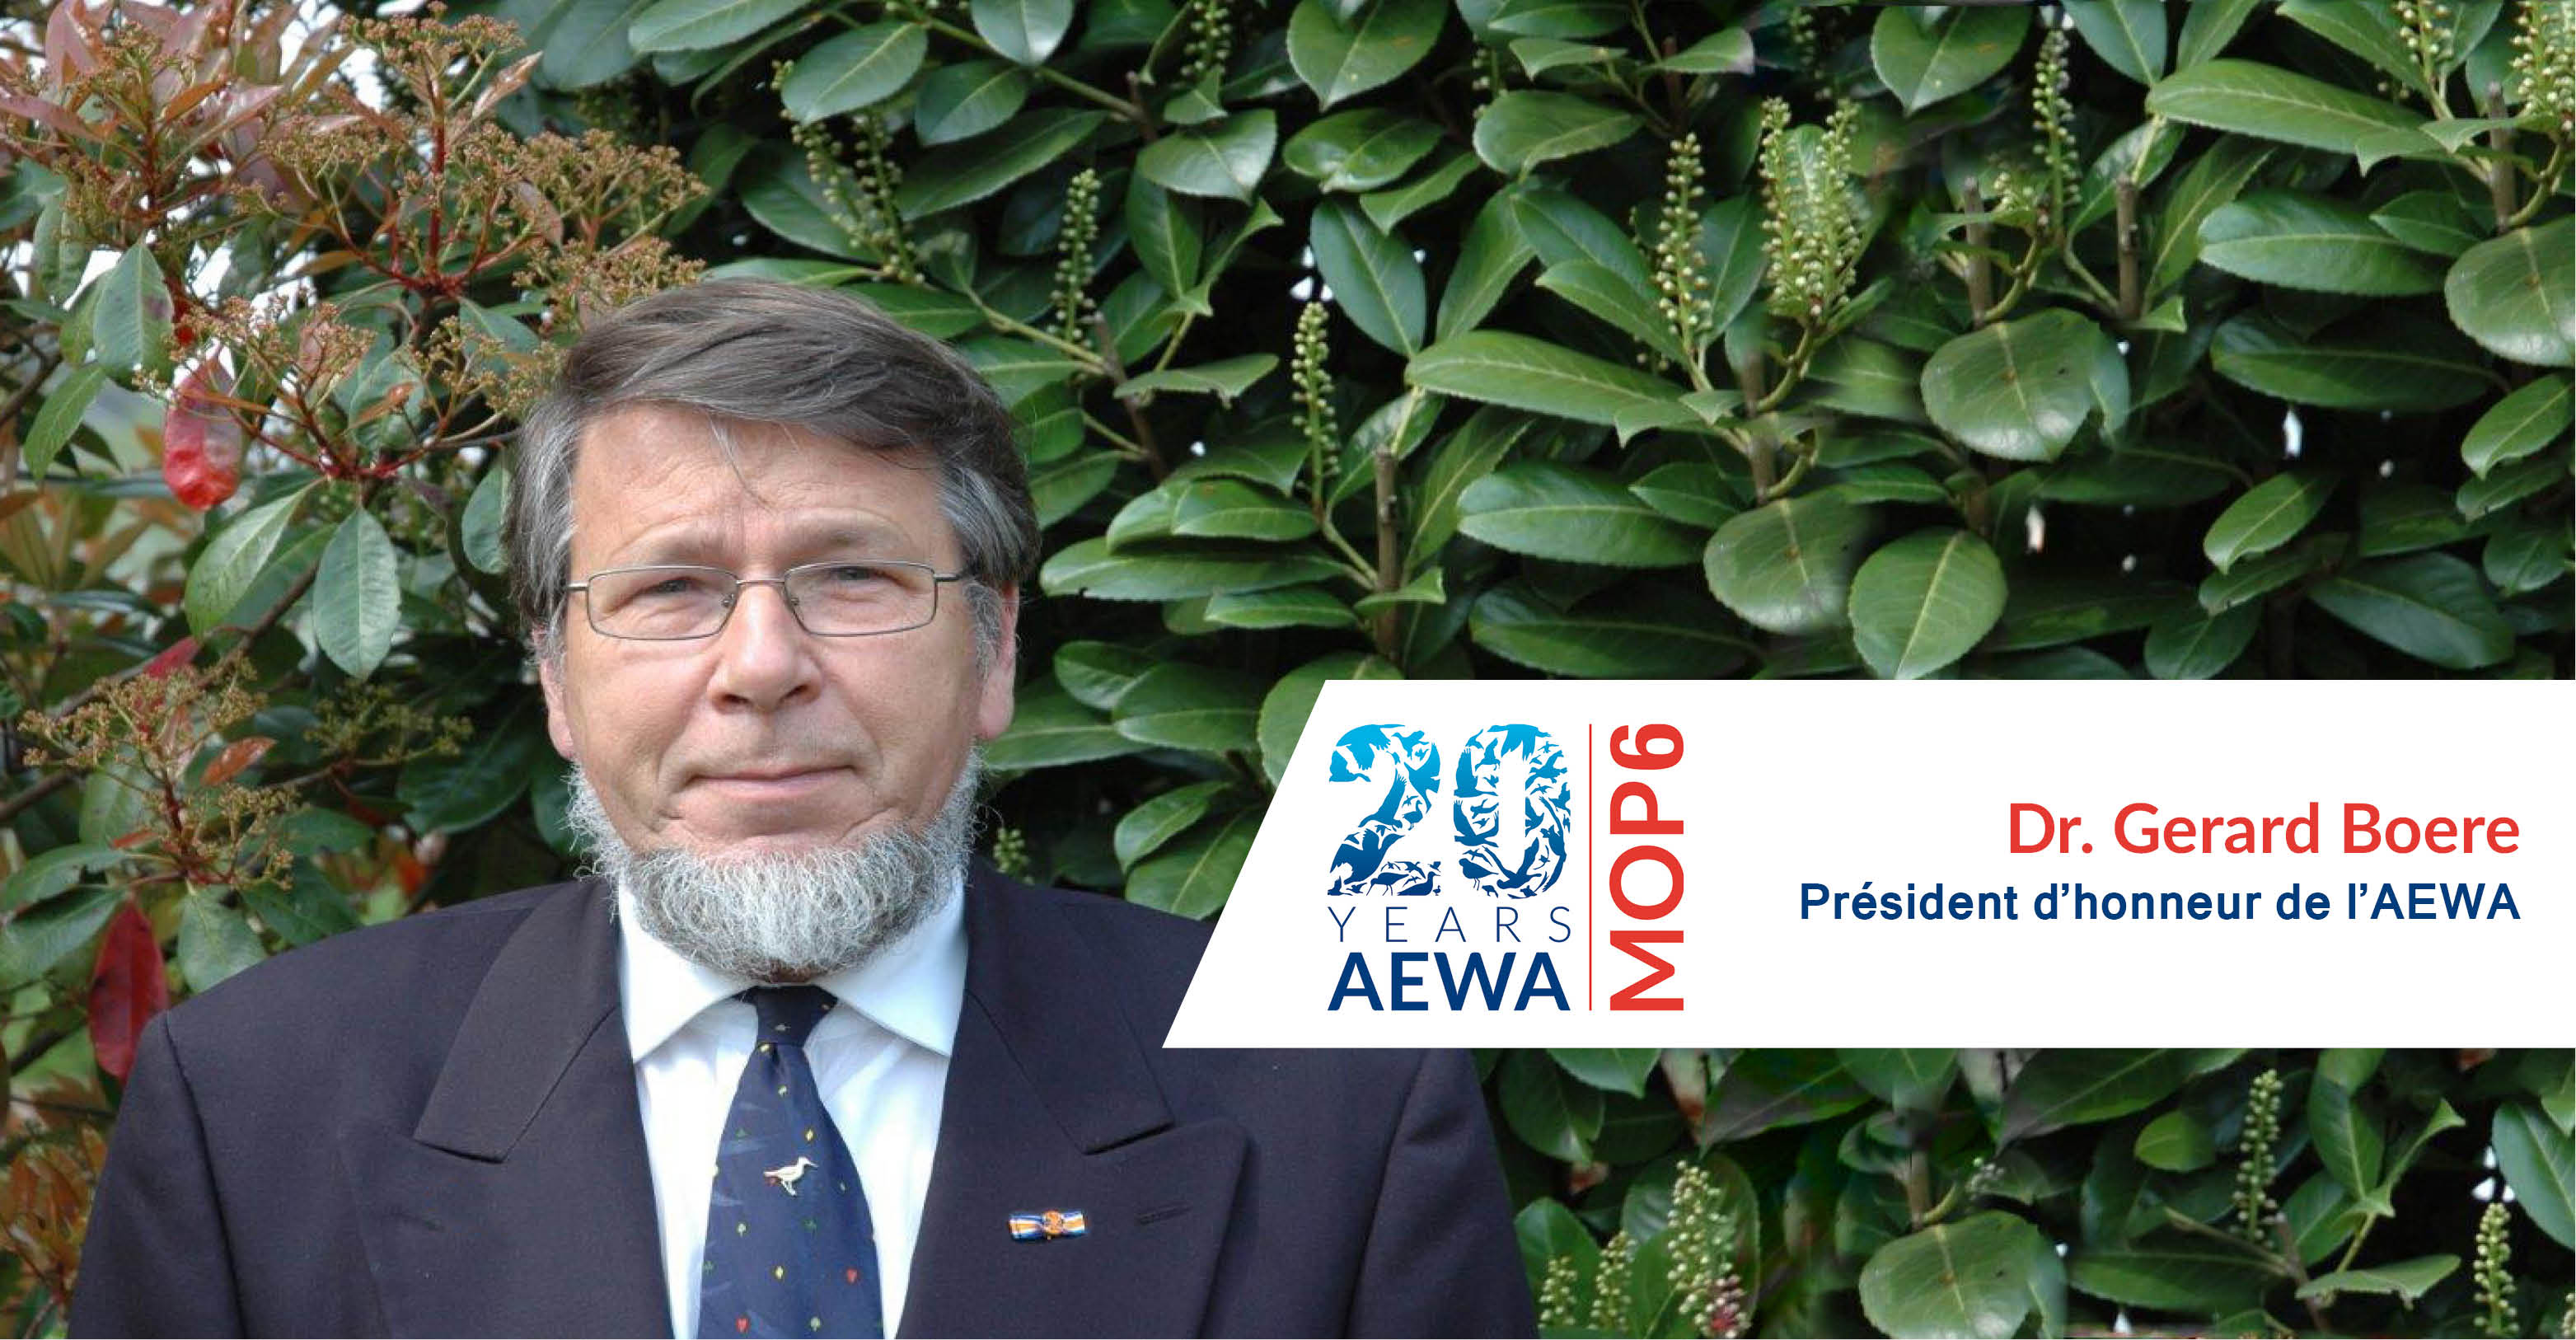 Dr Gerard C. Boere, Président d’honneur de l’AEWA